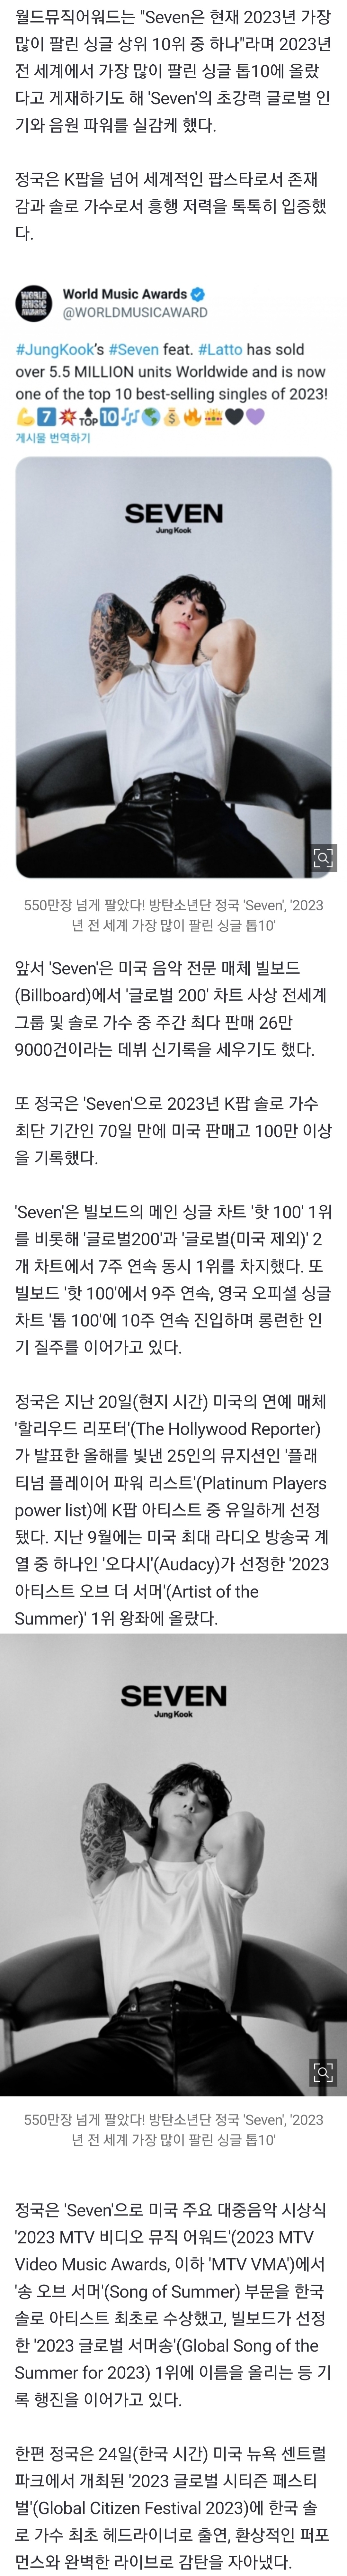 [정보/소식] 550만장 넘게 팔았다! 방탄소년단 정국 'Seven', '2023년 전 세계 가장 많이 팔린 싱글 톱10' | 인스티즈